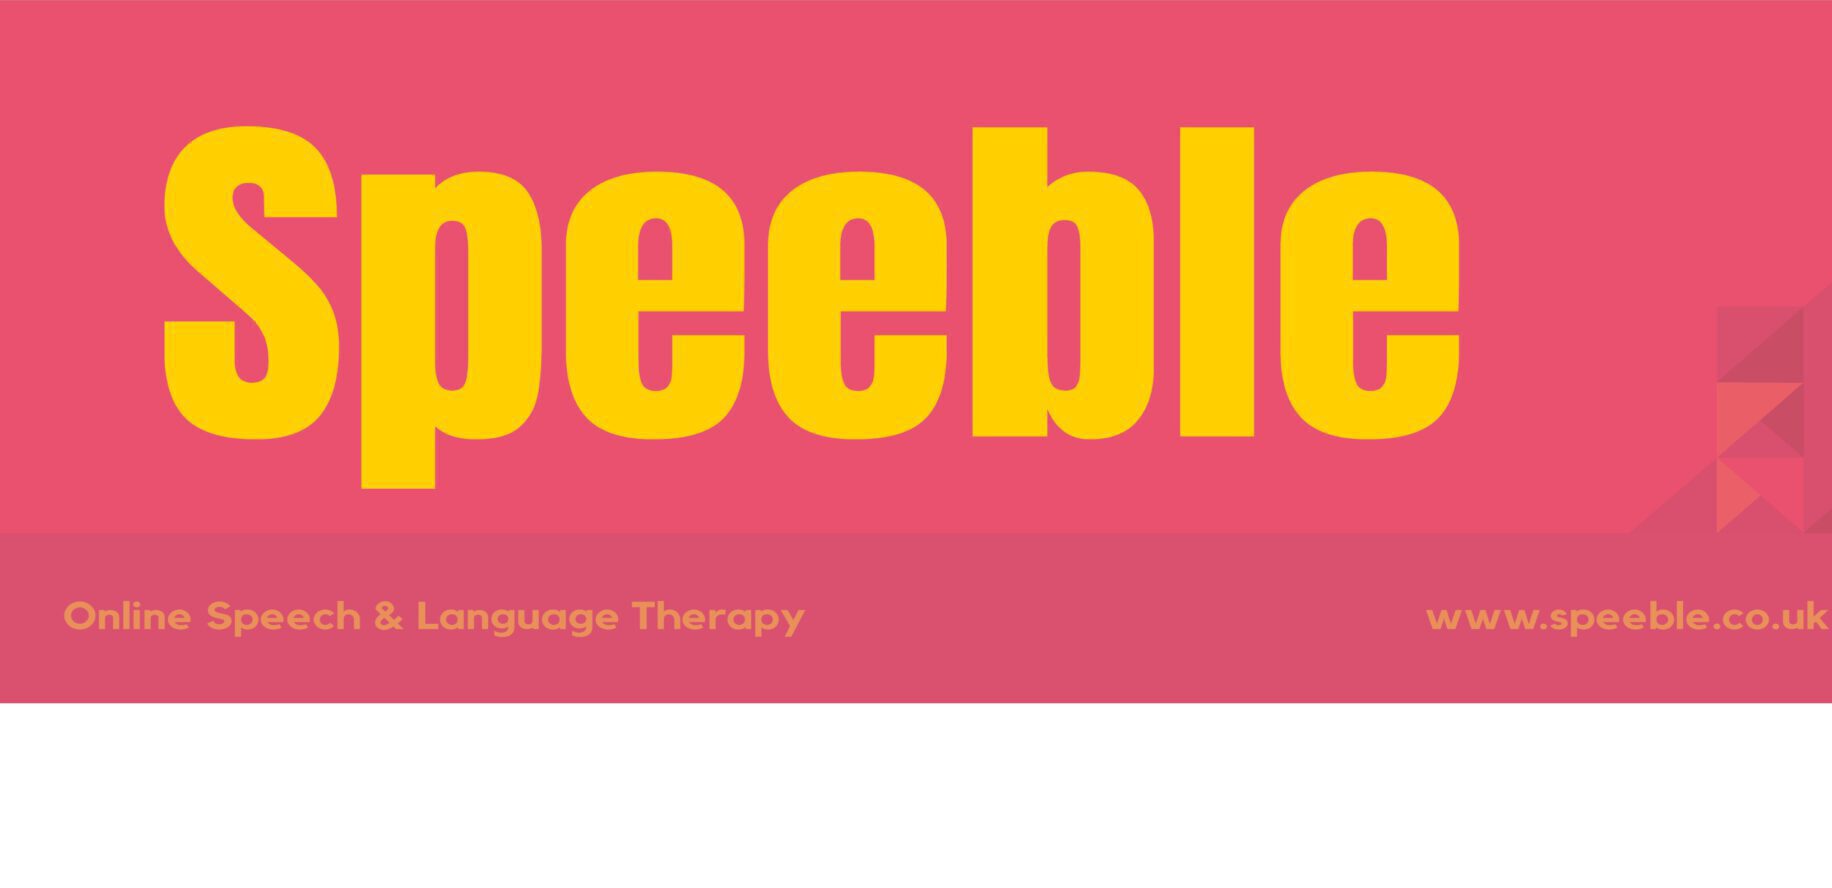 Speeble Logo